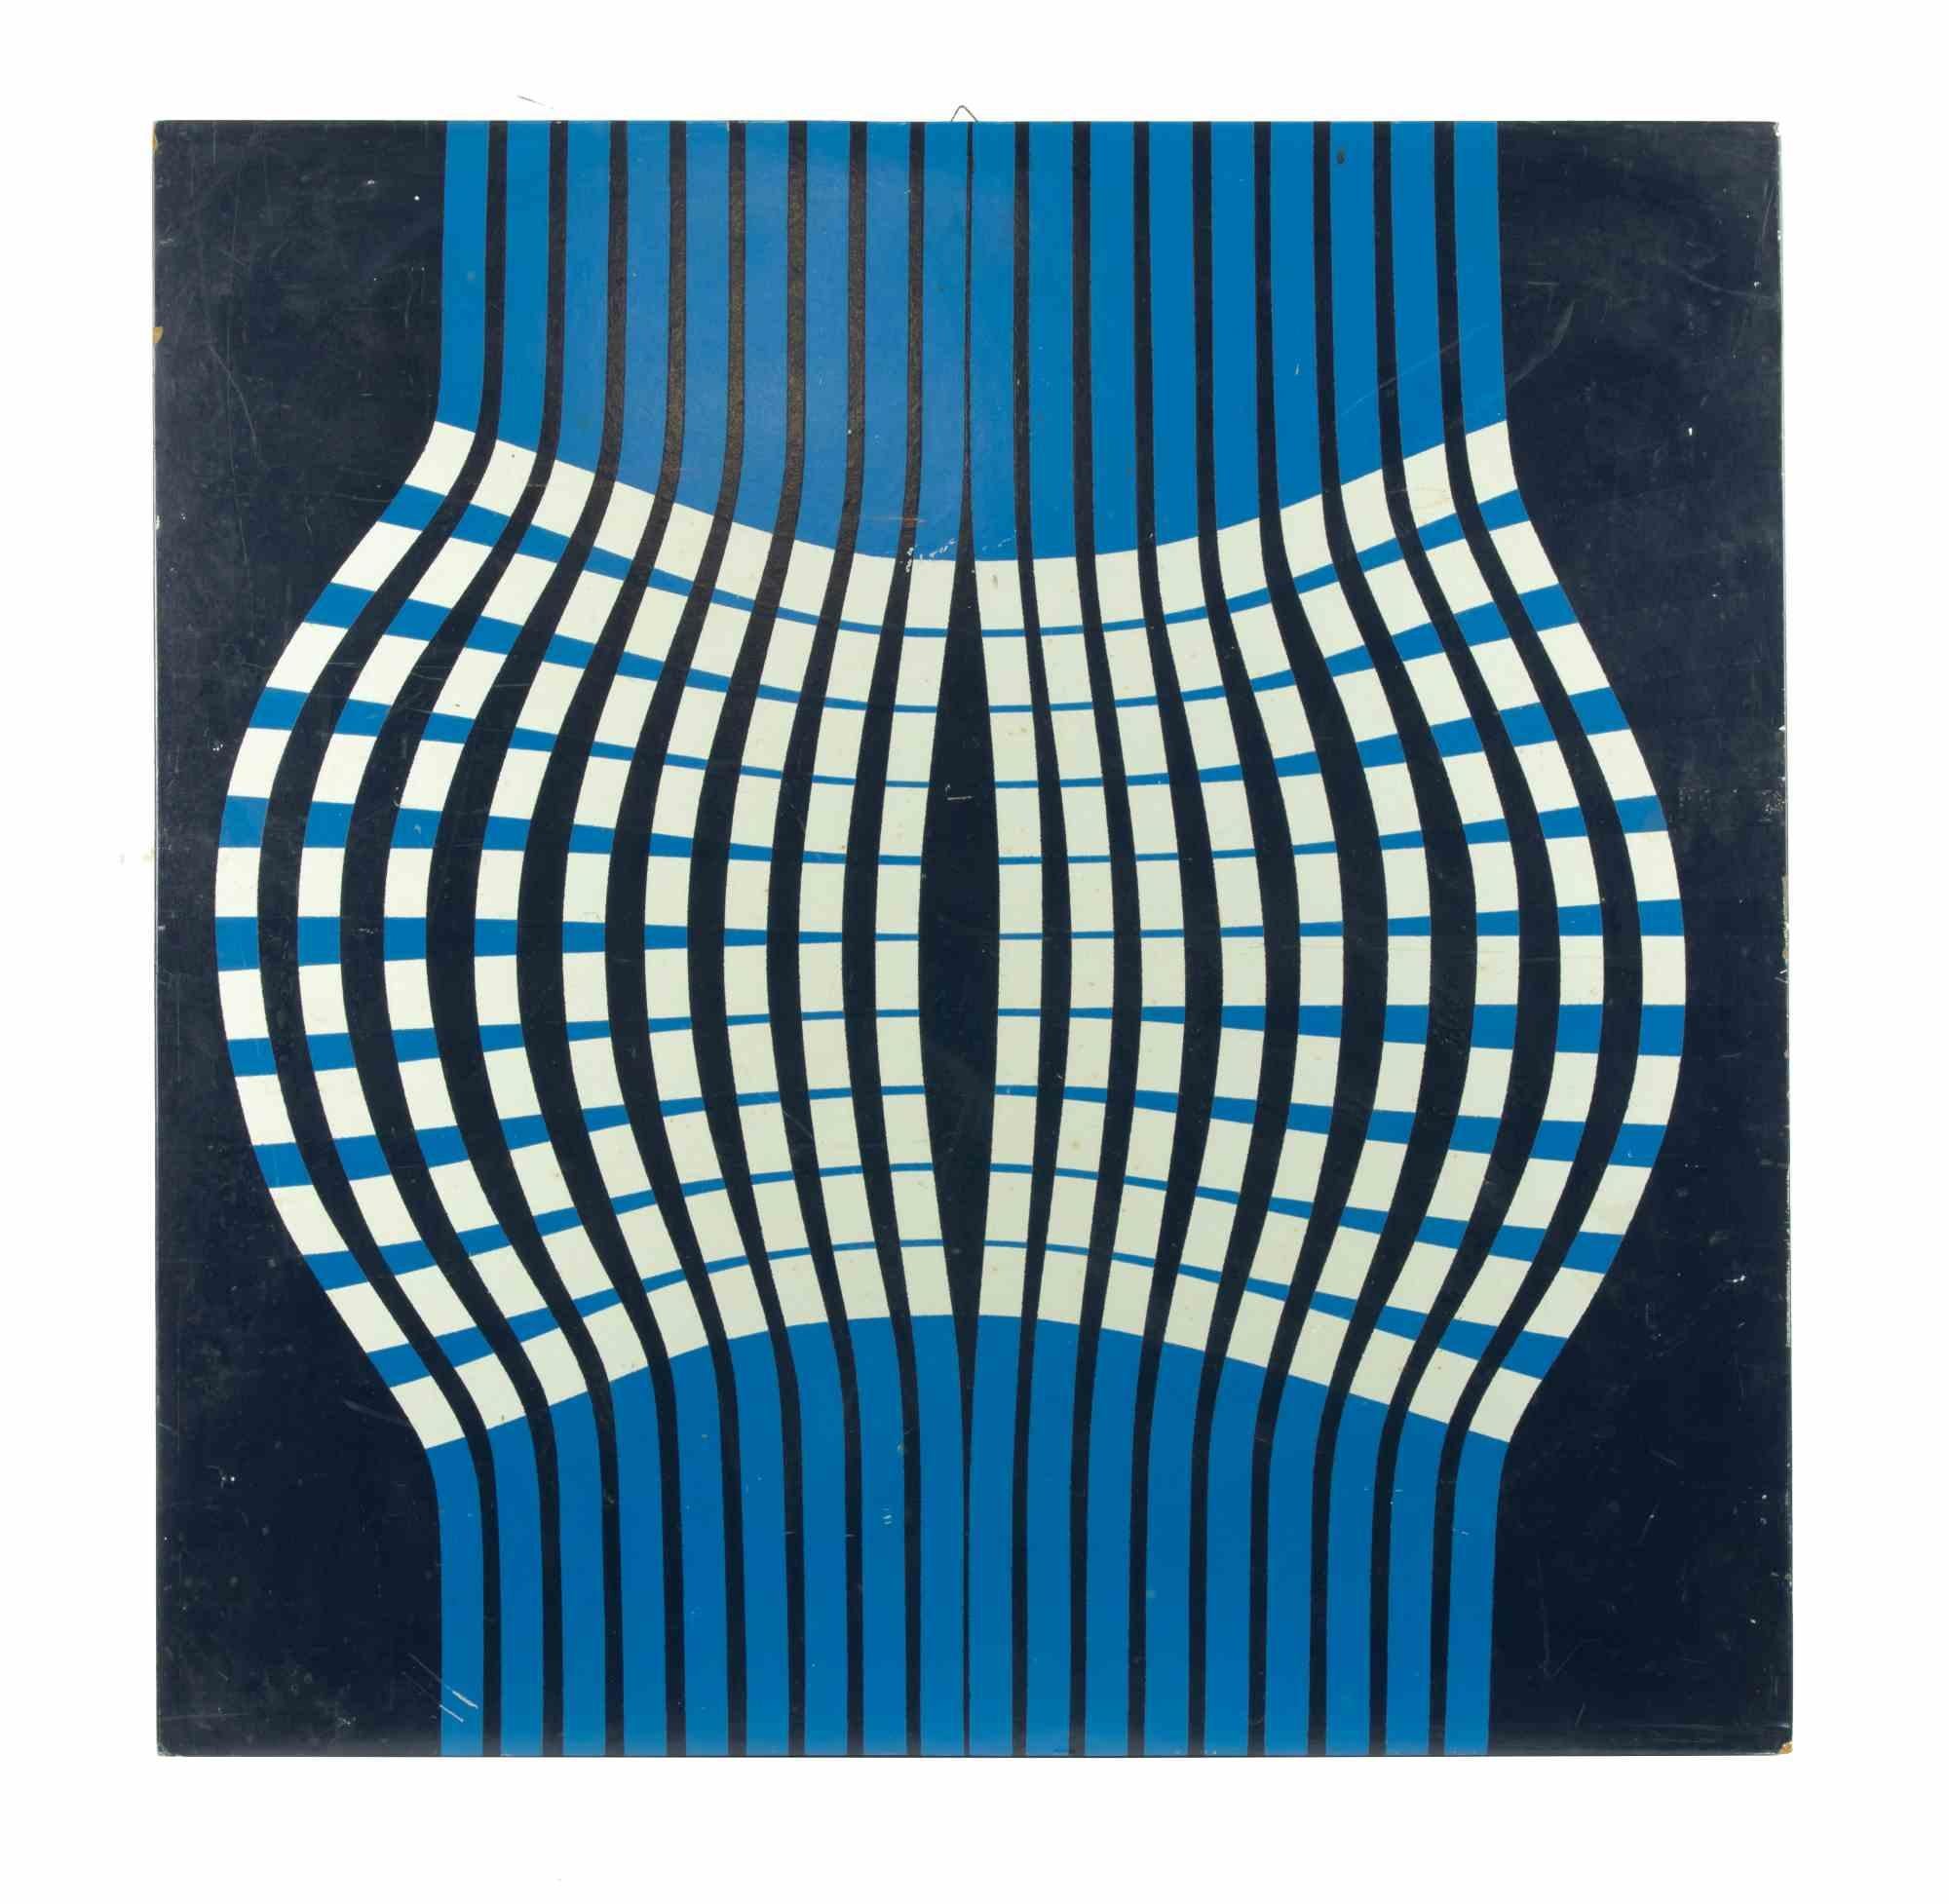 Composition géométrique est une œuvre d'art contemporaine originale réalisée par Aldo Moriconi en 1967.

Émail de couleurs mélangées sur bois.

Signé et daté à la main au dos de l'œuvre.